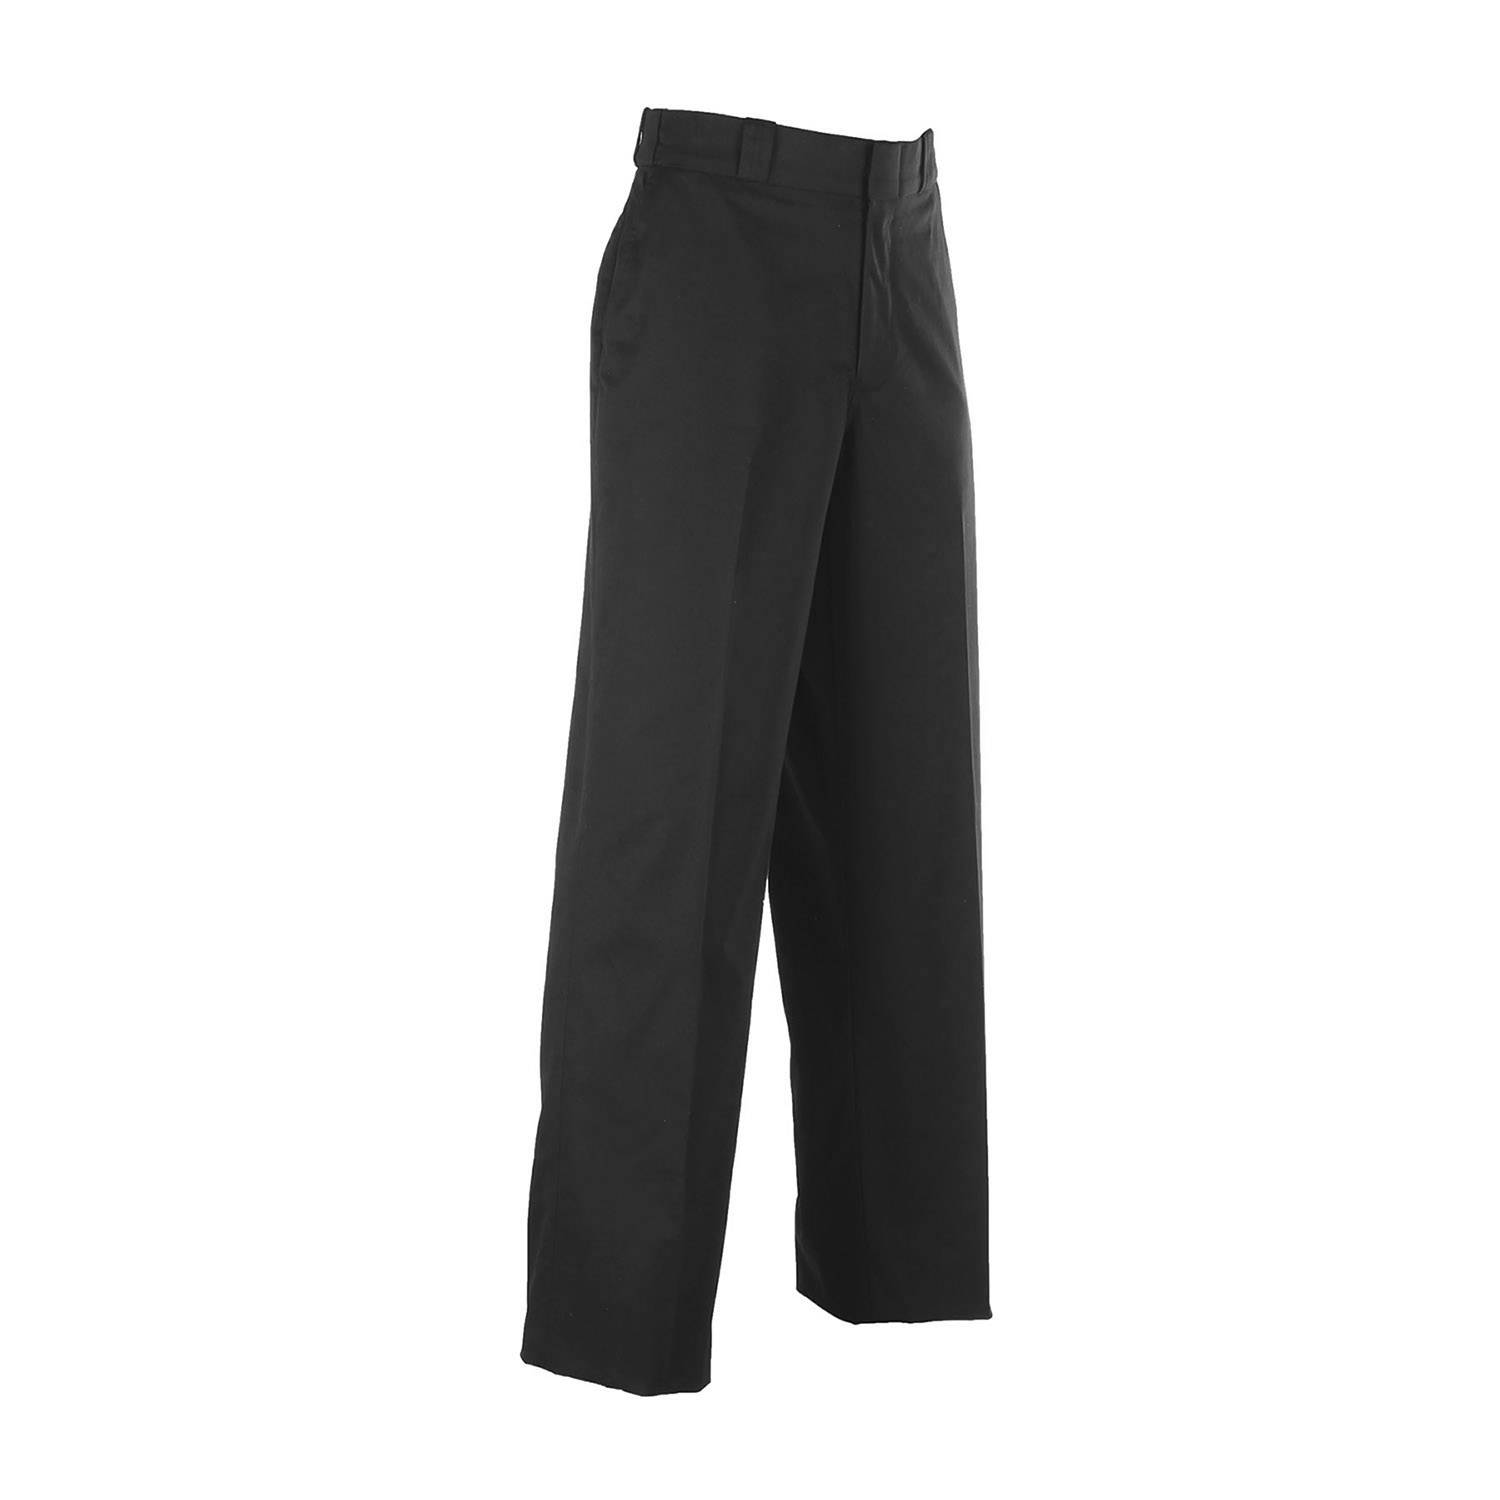 Elbeco Ladies Choice TEK3 4 Pocket Trousers